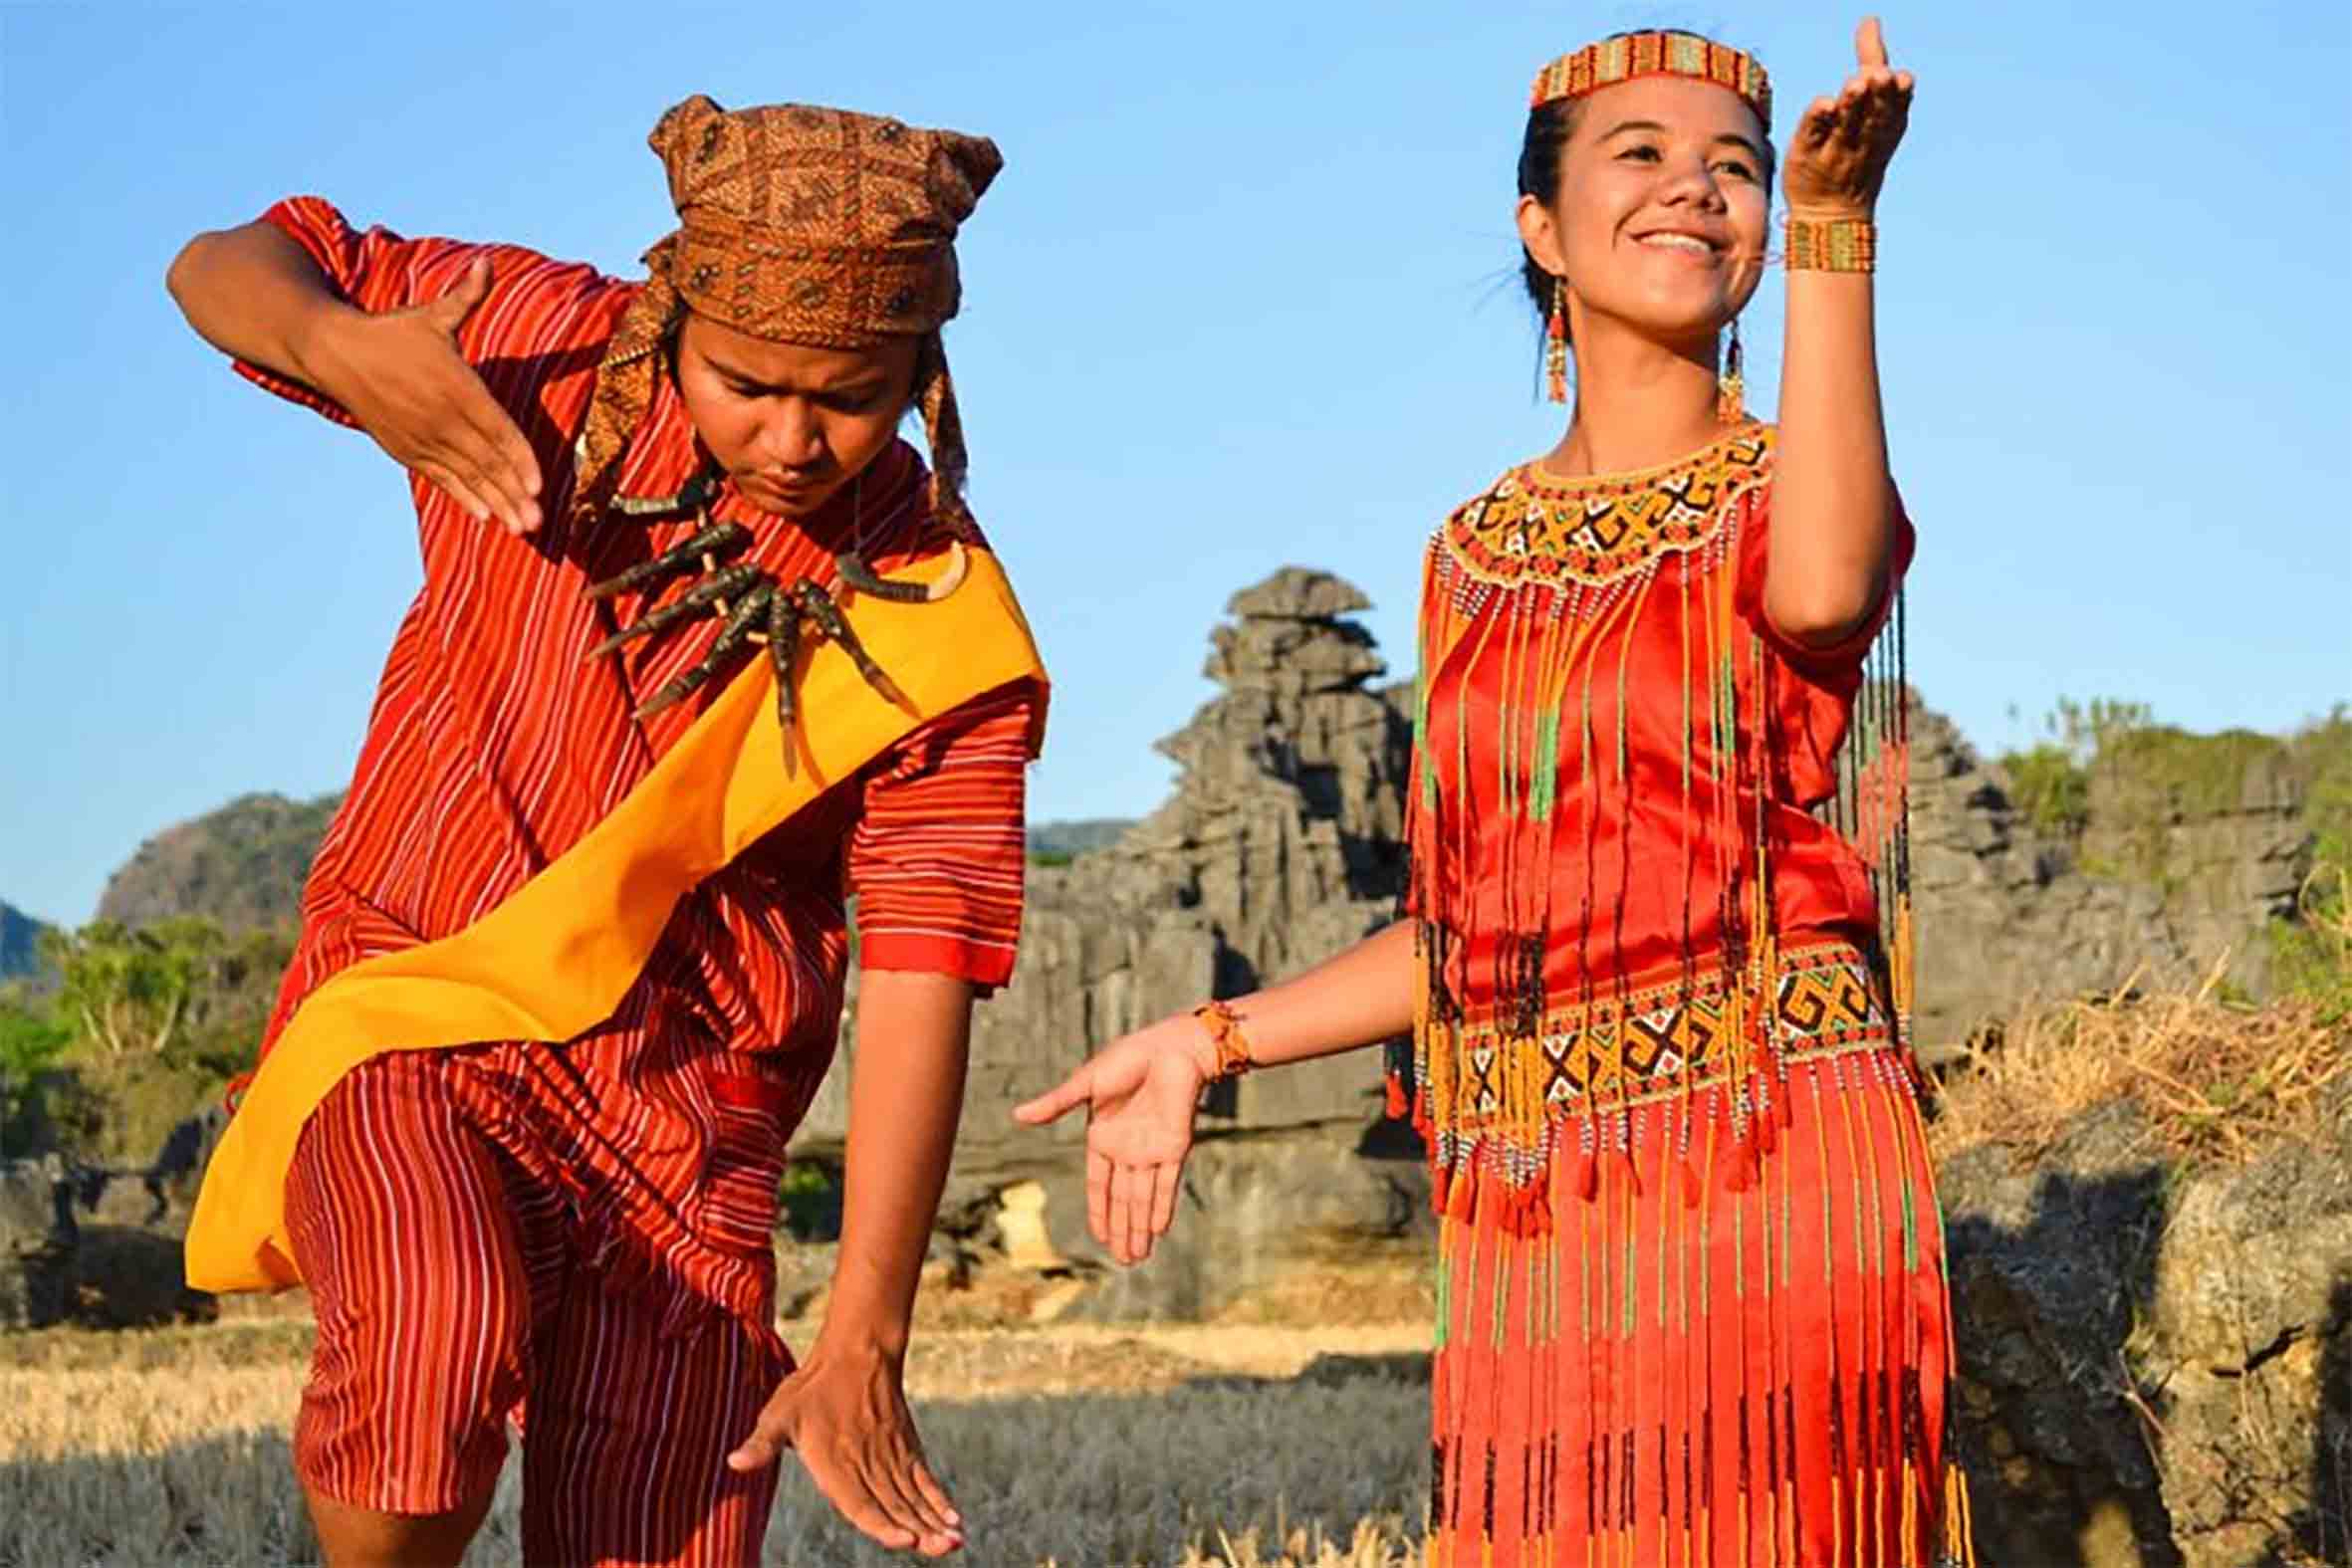 Ragam Kebudayaan dan Kekayaan Indonesia Terlihat dari Pakaian Adat, Ini Pakaian Adat dari Sulawesi Barat